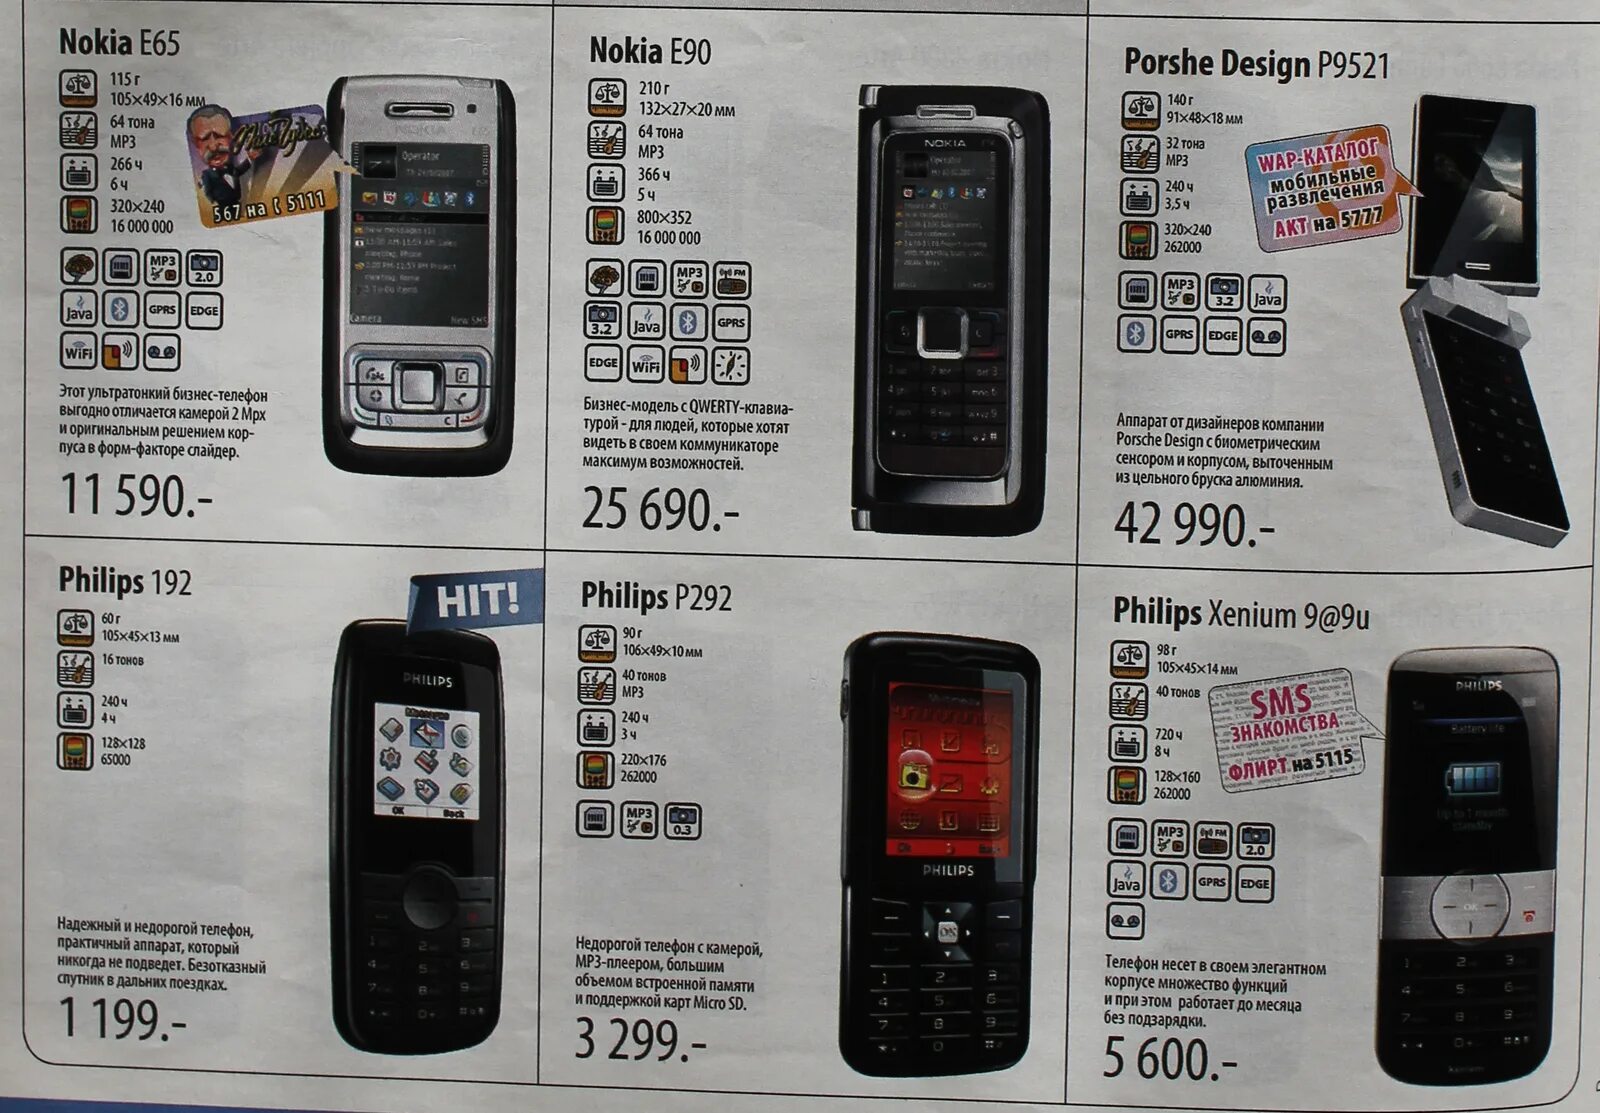 90 90 10 телефон. Телефоны в 2008 году какие были. Телефон для 10 лет. Каталоги сотовых телефонов старые. Телефоны ностальгия.